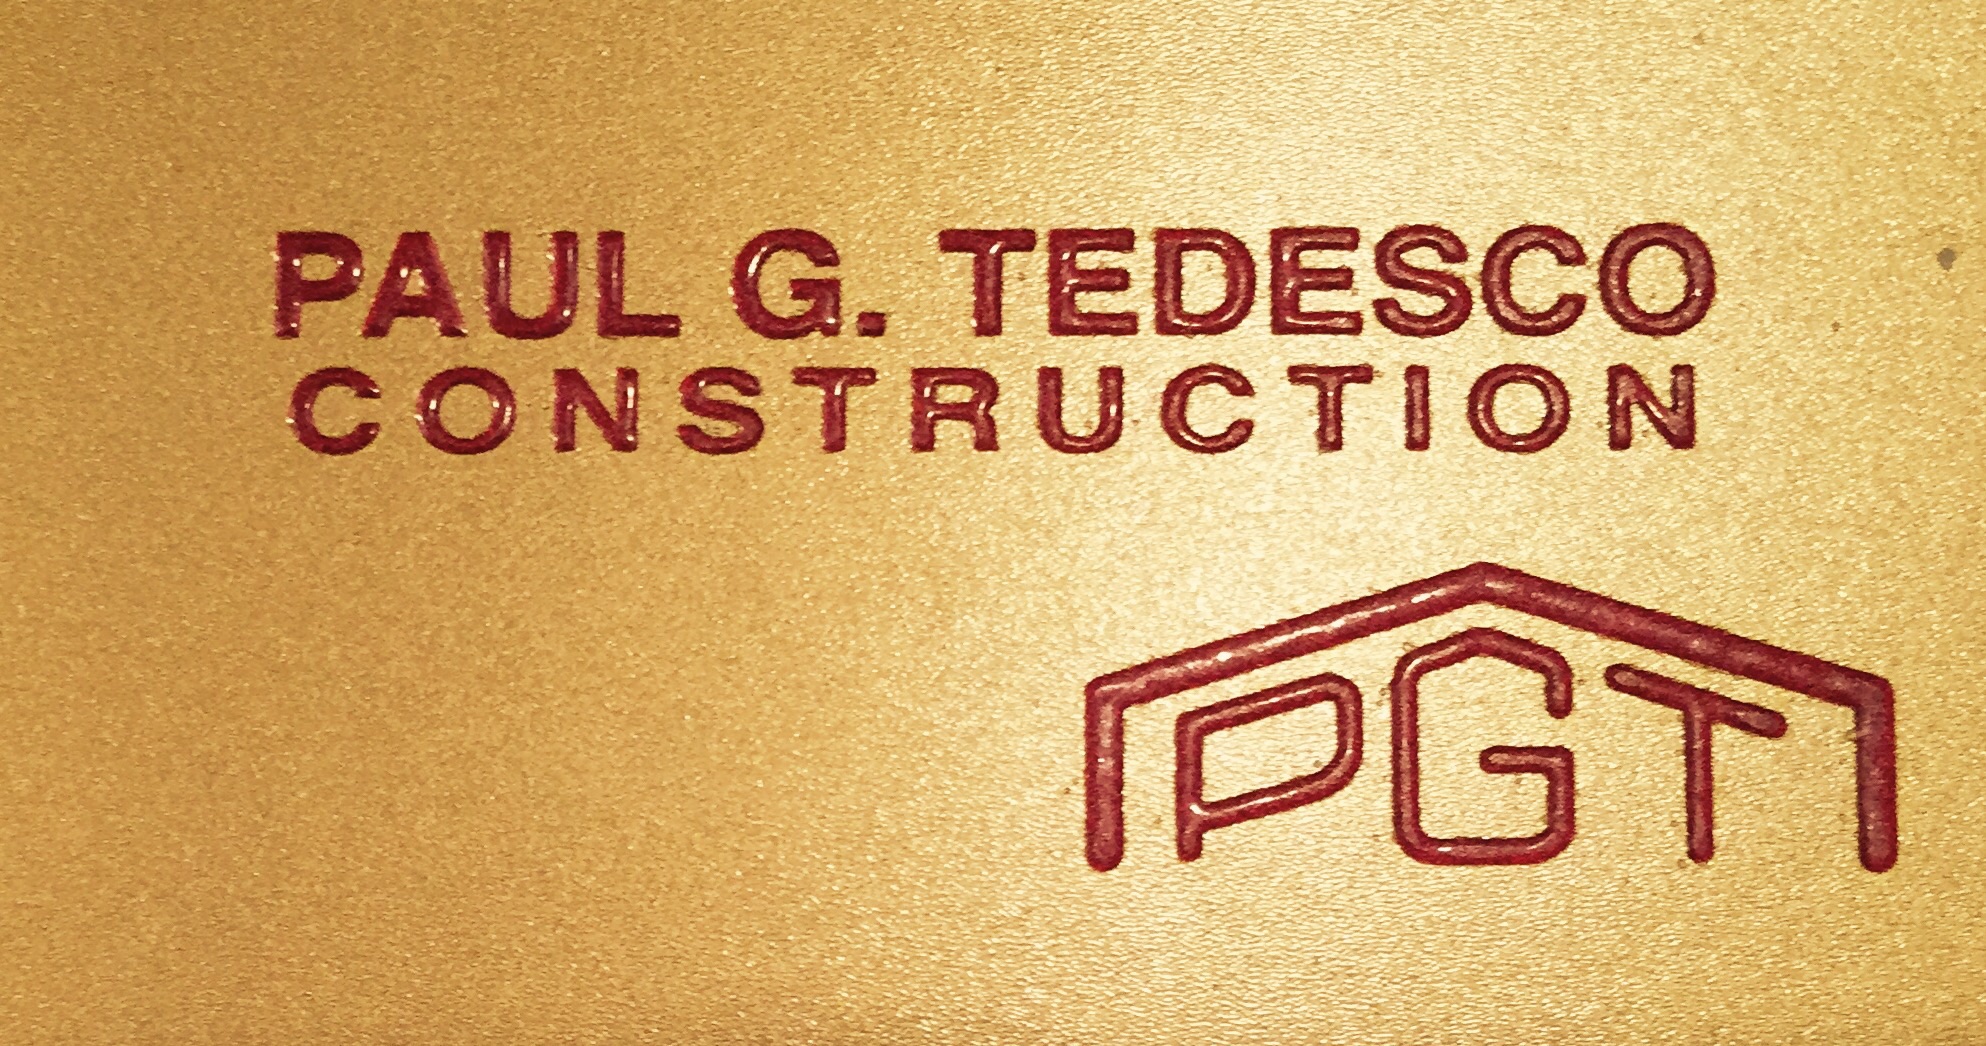 PG Tedesco Construction Logo